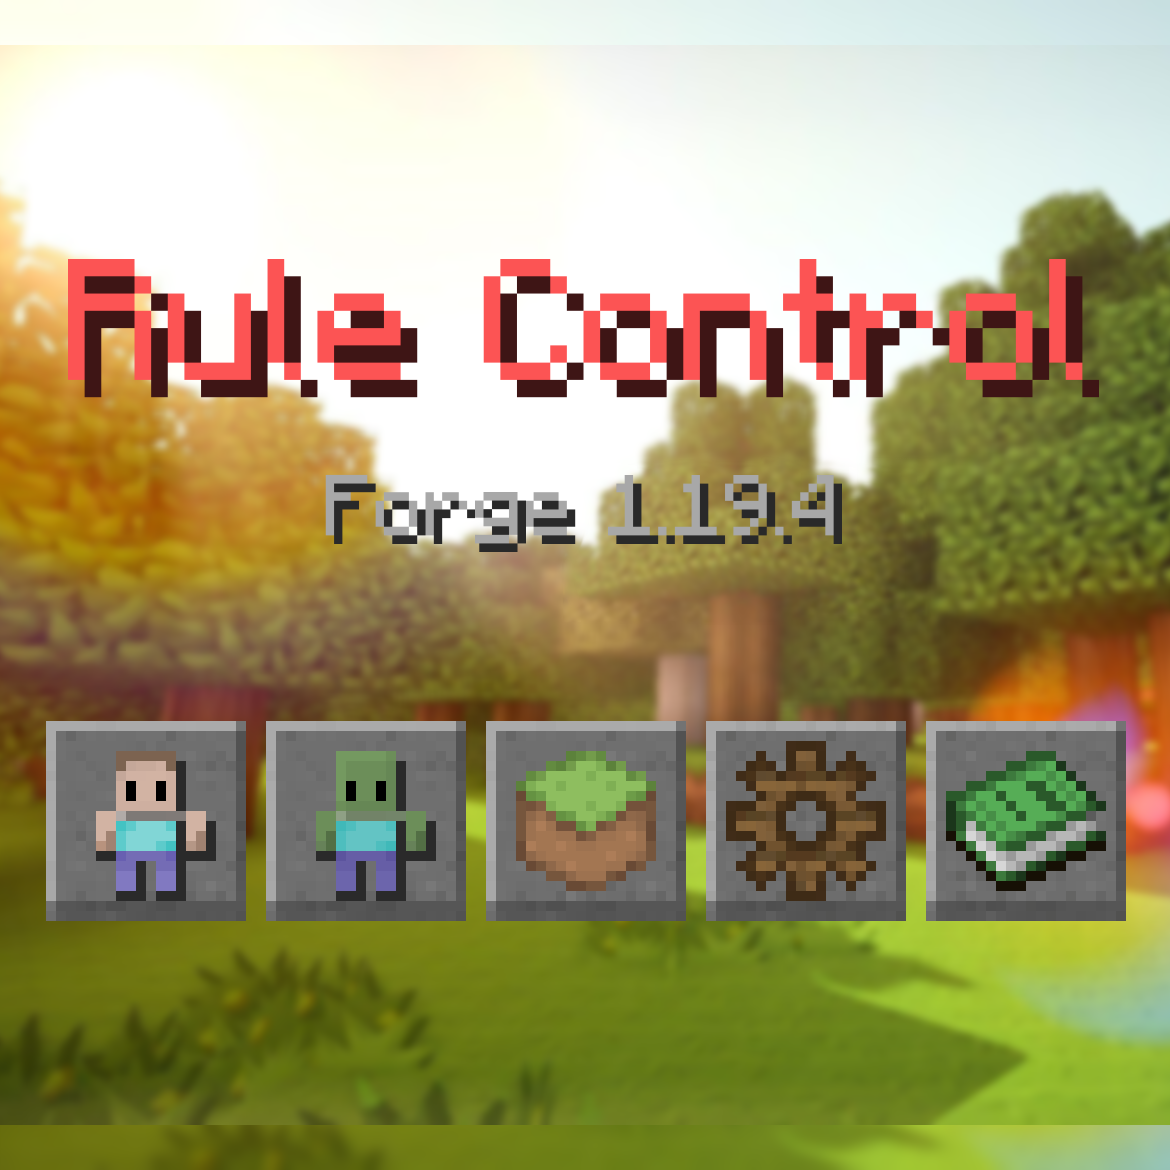 Time Control - Minecraft Mods - CurseForge